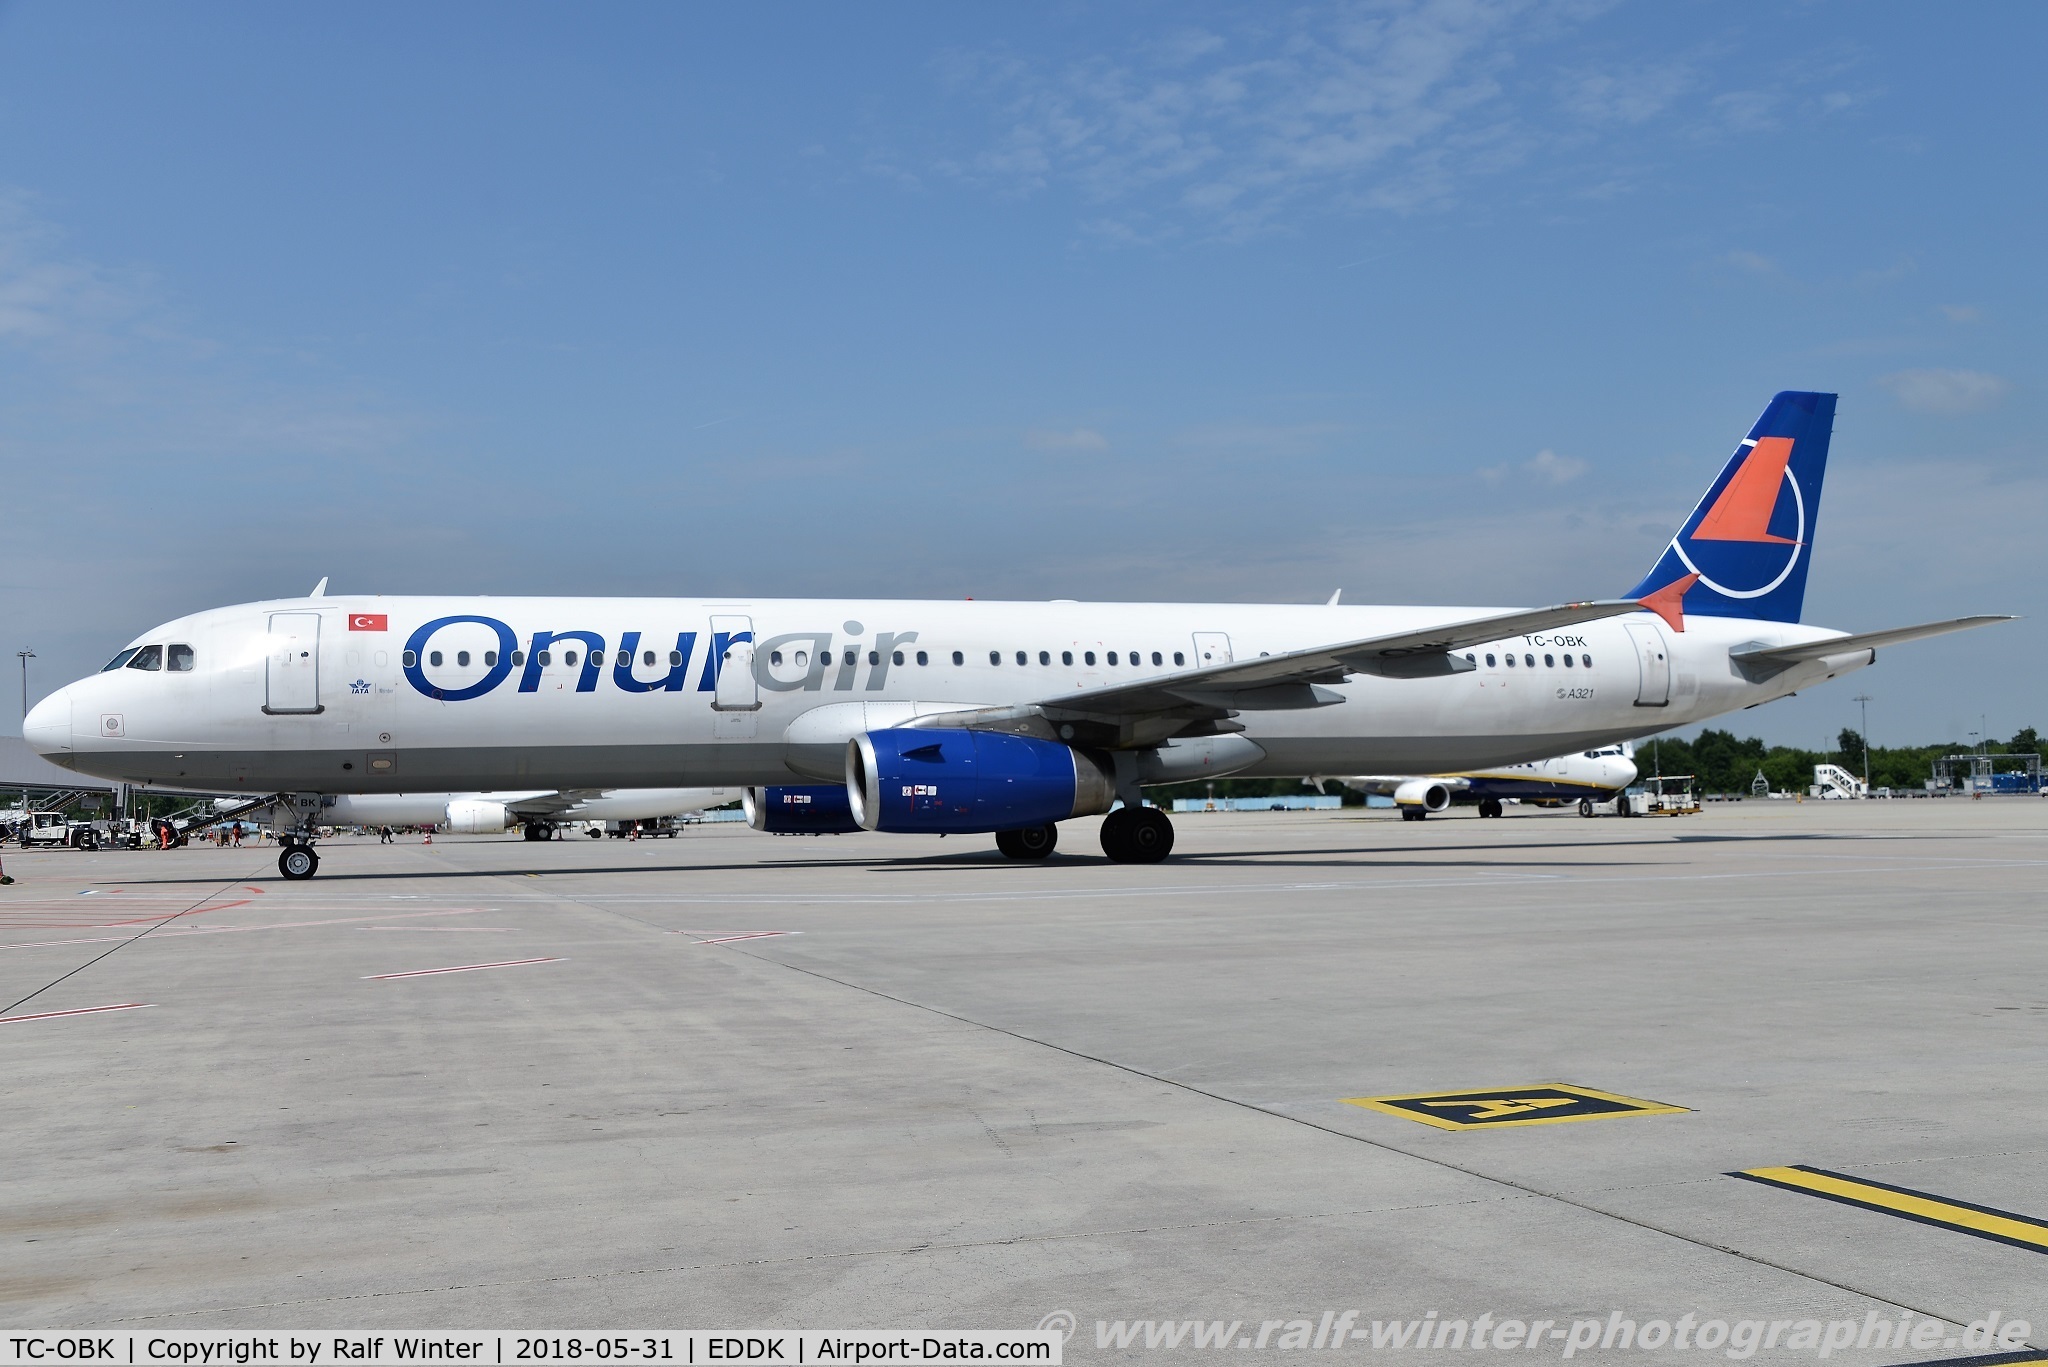 TC-OBK, 1998 Airbus A321-231 C/N 792, Airbus A321-231 - 8Q OHY Onur Air 'Rana' - 792 - TC-OBK - 31.05.2018 - CGN